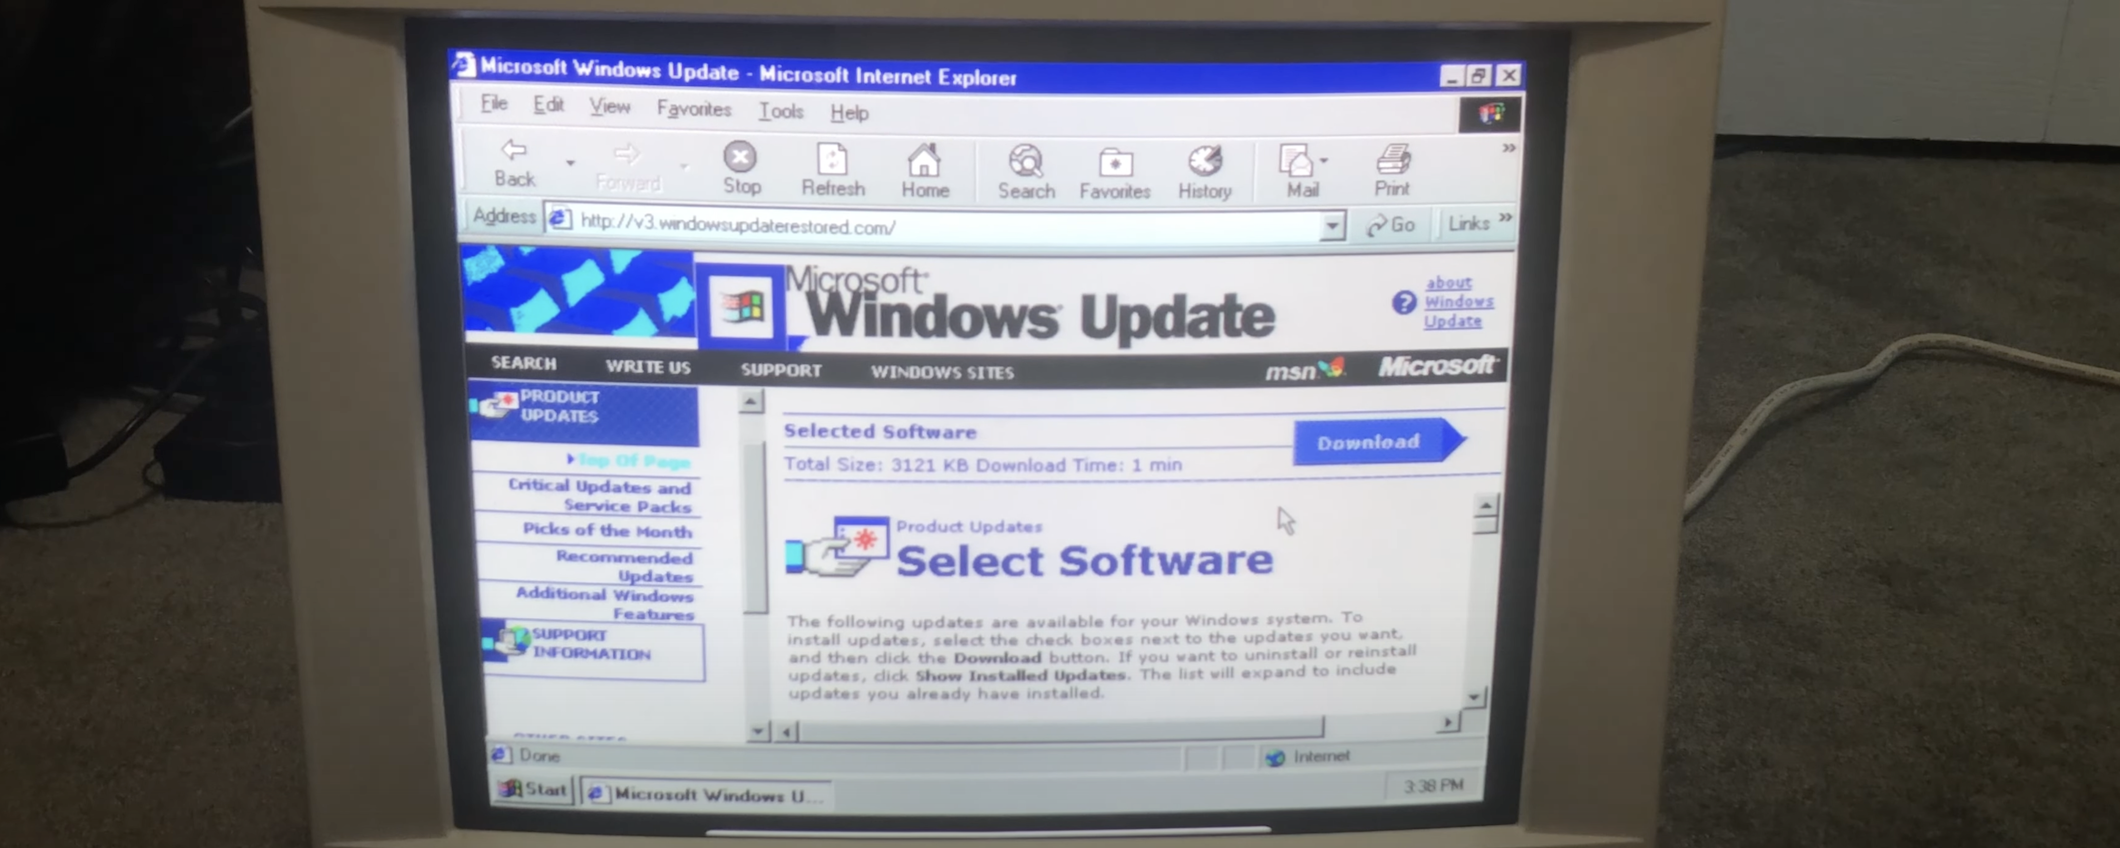 Windows Update Restored consente di aggiornare vecchie versioni di Windows